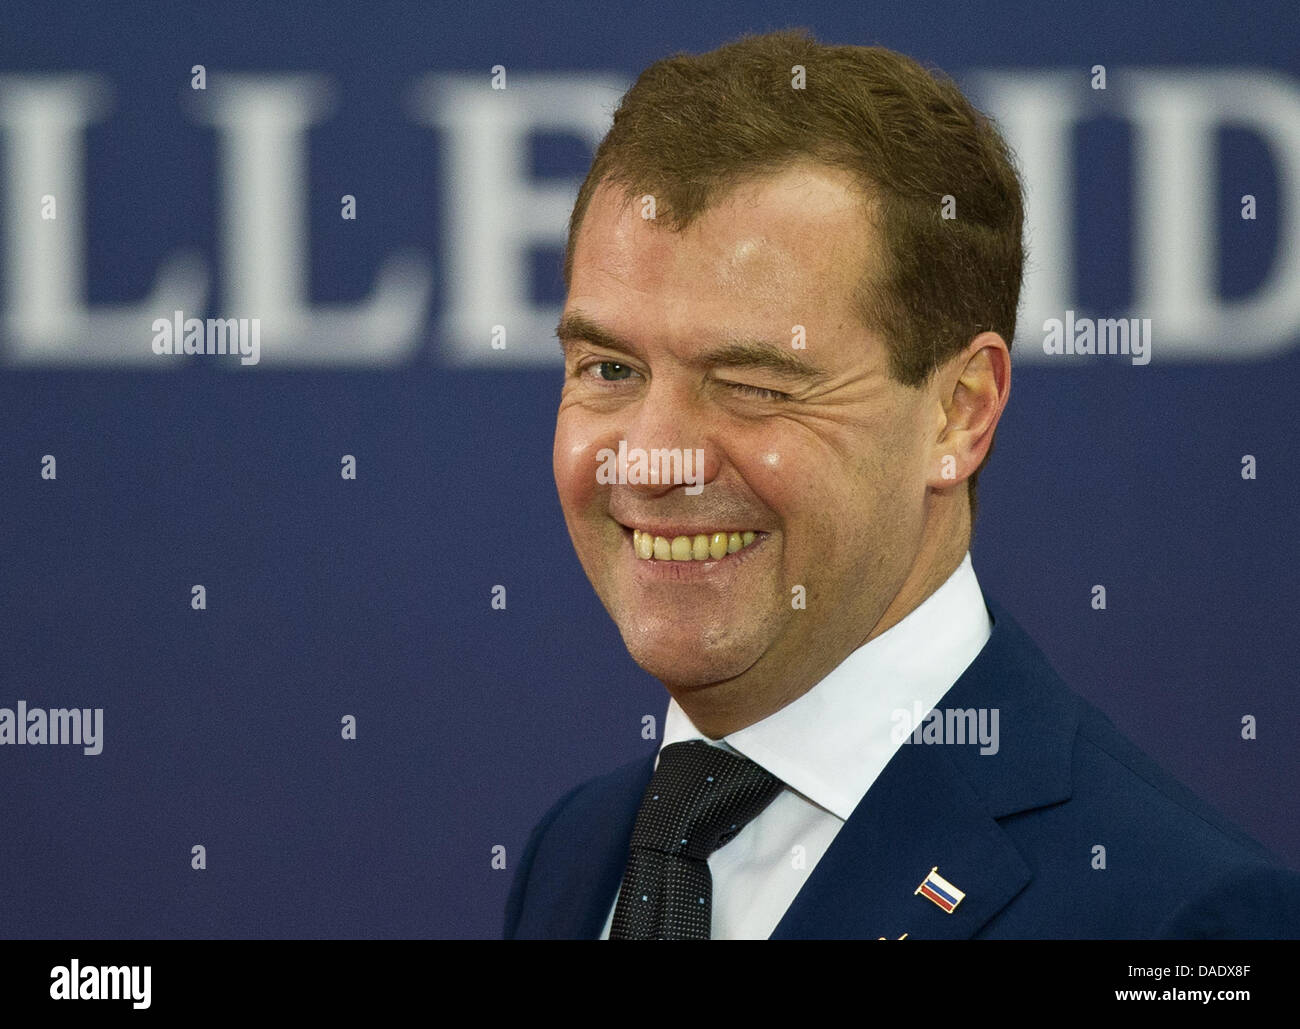 Der russische Präsident Dmitri Medwedew trifft am Donnerstag (03.11.2011) in Cannes zum offiziellen Abendessen ein. Am 03. und 04.11.2011 treffen die G20 in der französischen Stadt am Mittelmeer zu ihrem diesjährigen Gipfel zusammen. Foto: Peer Grimm dpa Stock Photo